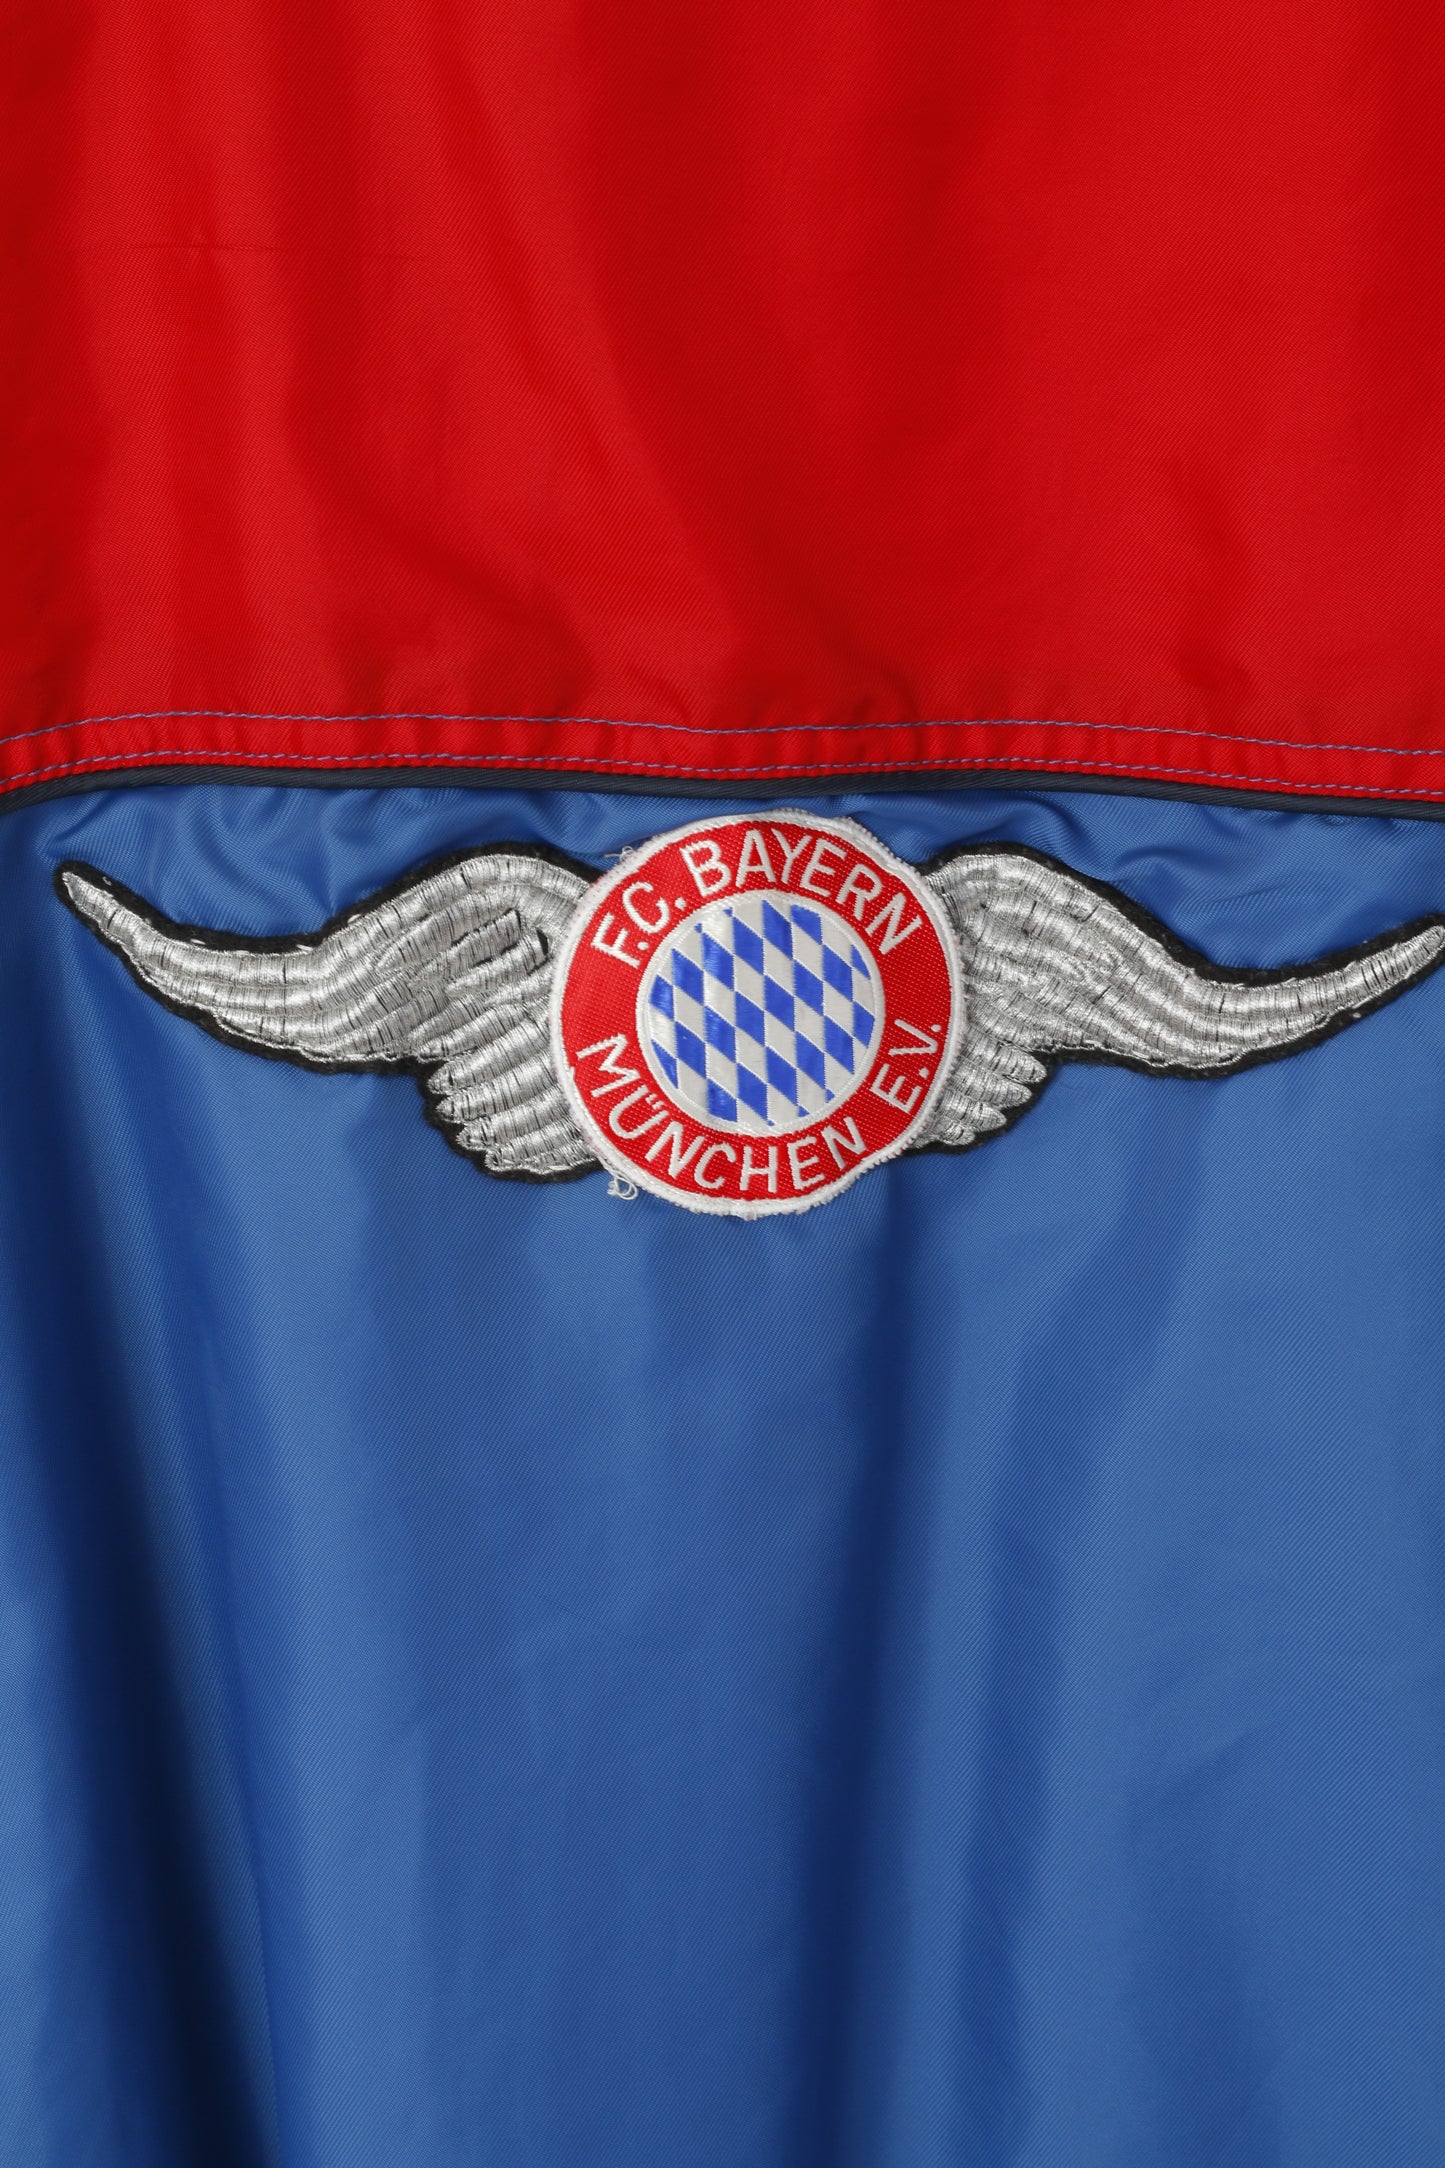 CUP 66 Men XL Jacket Blue Red FC Bayern Munchen Pullover Football Hidden Hood Top